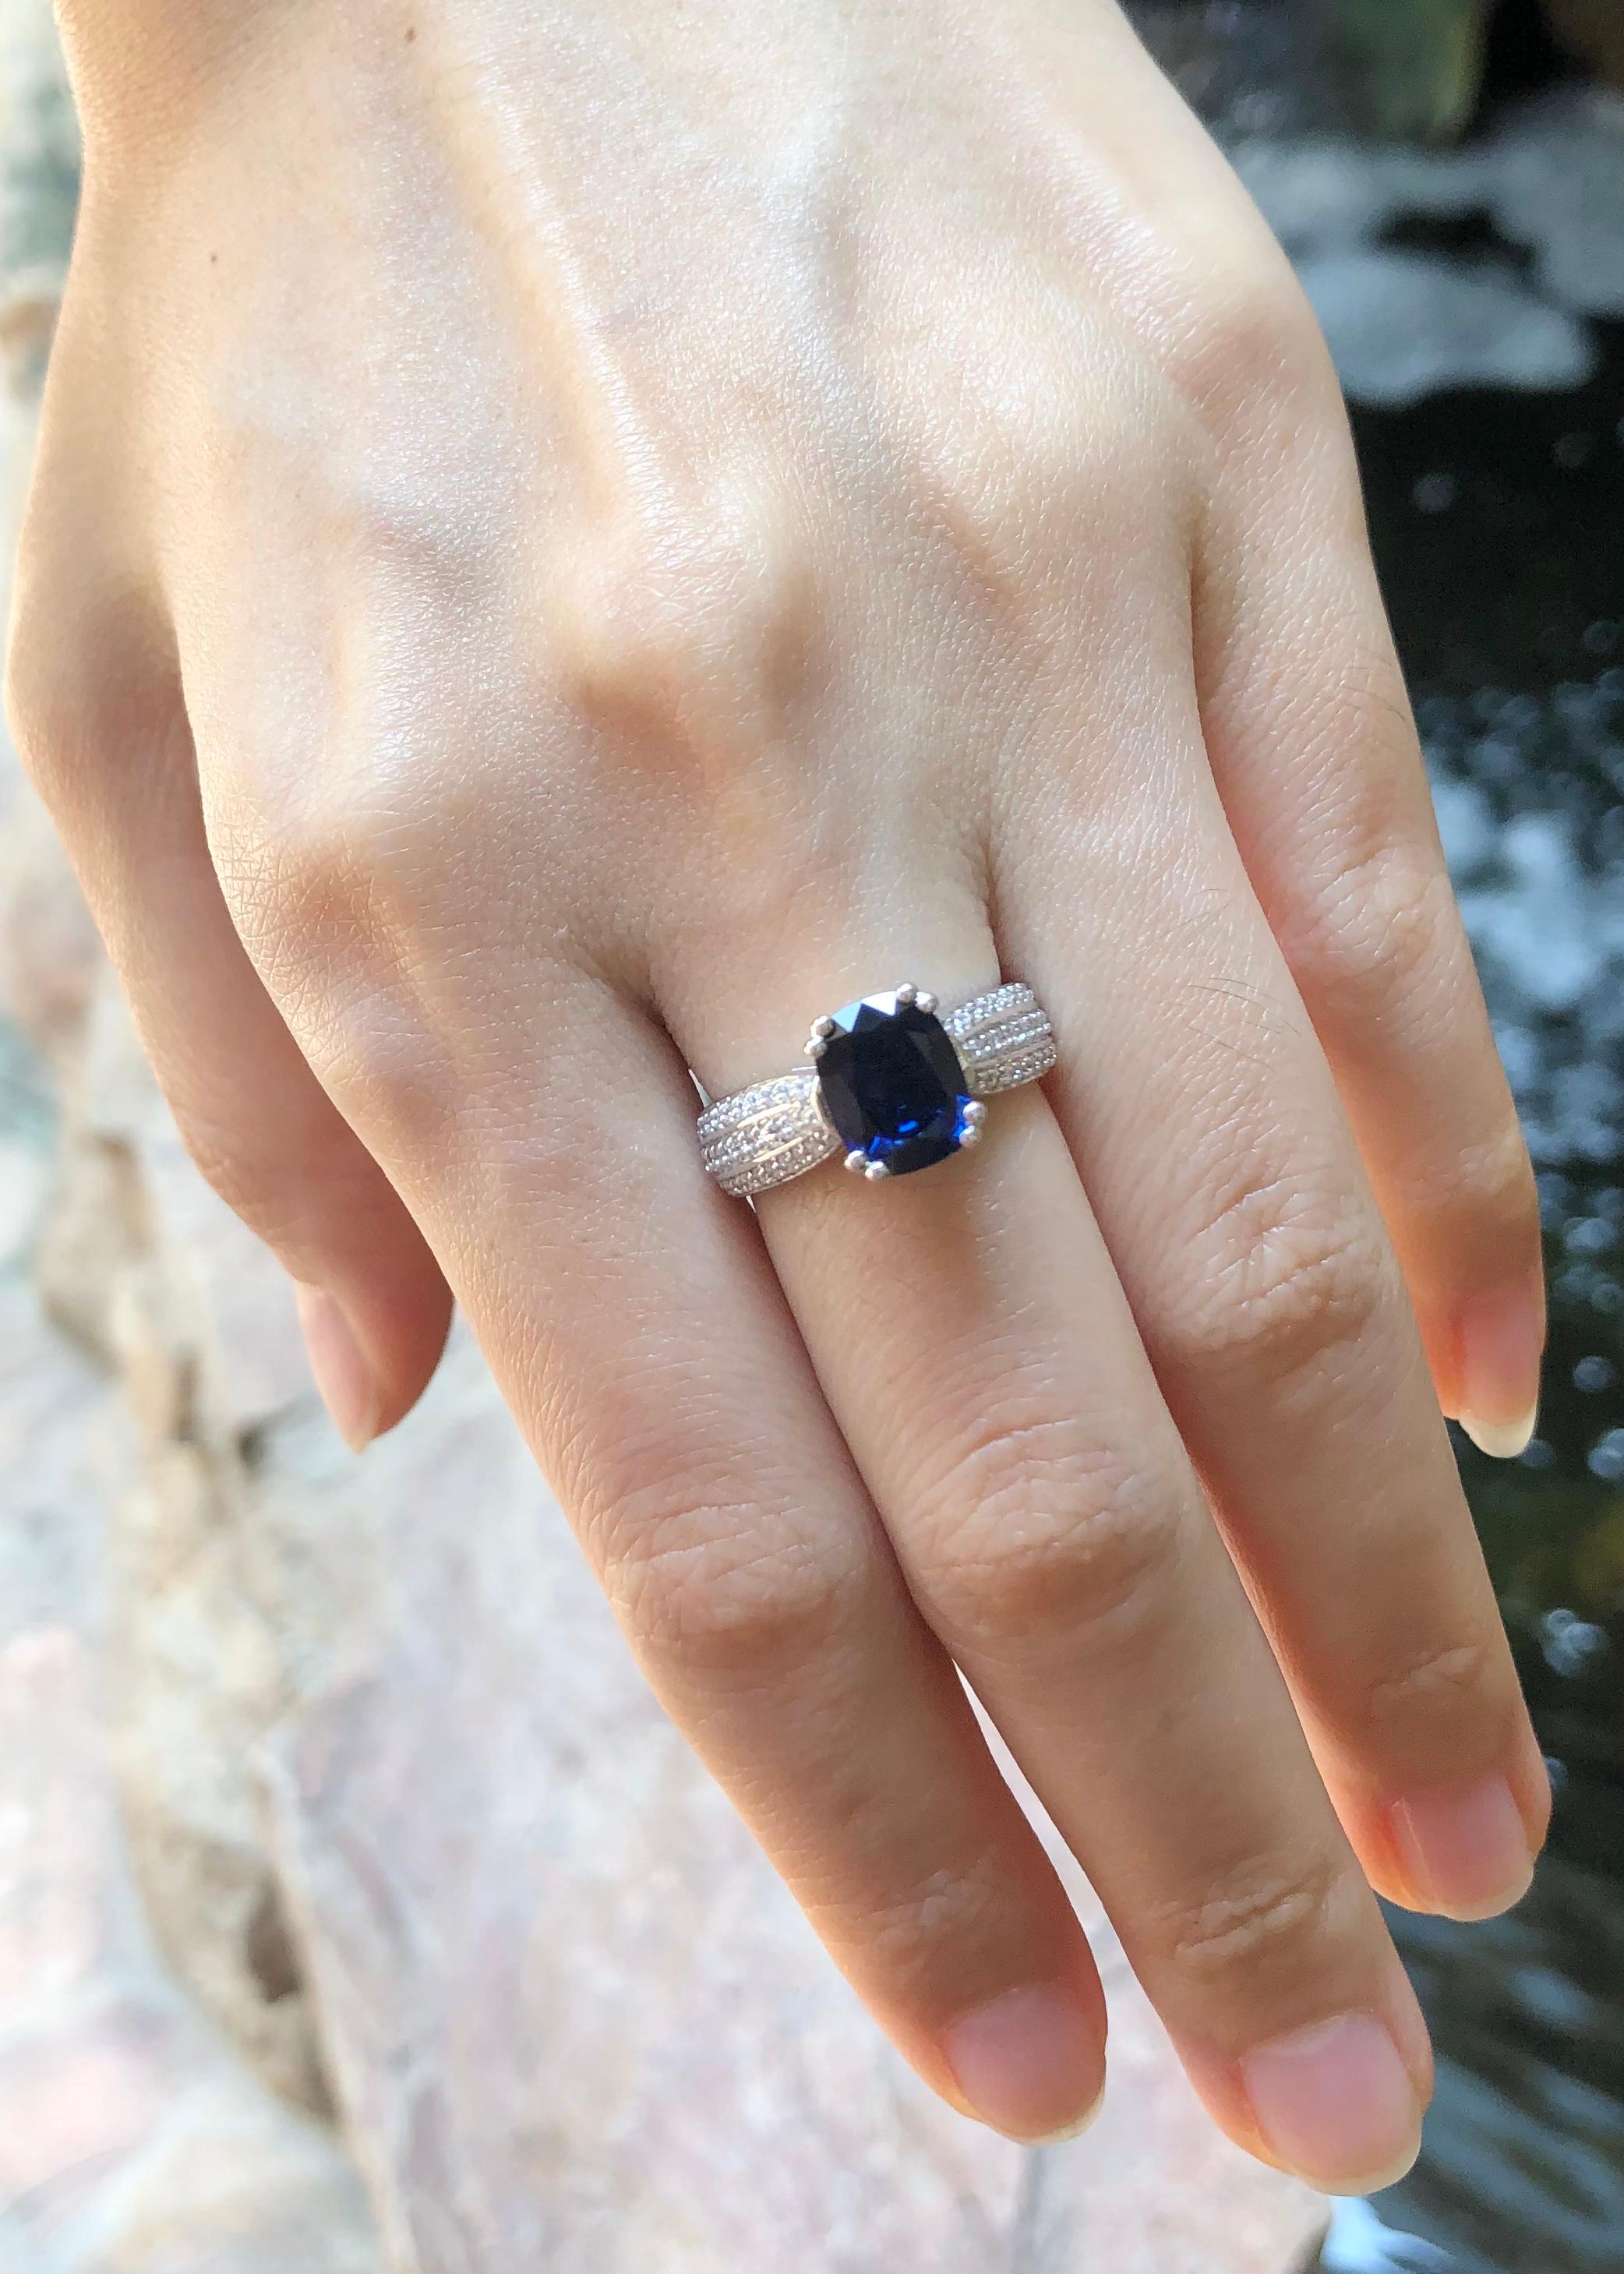 Saphir bleu 2,48 carats et diamant 0,39 carat bague en or blanc 18 carats

Largeur :  0.8 cm 
Longueur : 0,9  cm
Taille de l'anneau : 52
Poids total : 5,3 grammes



